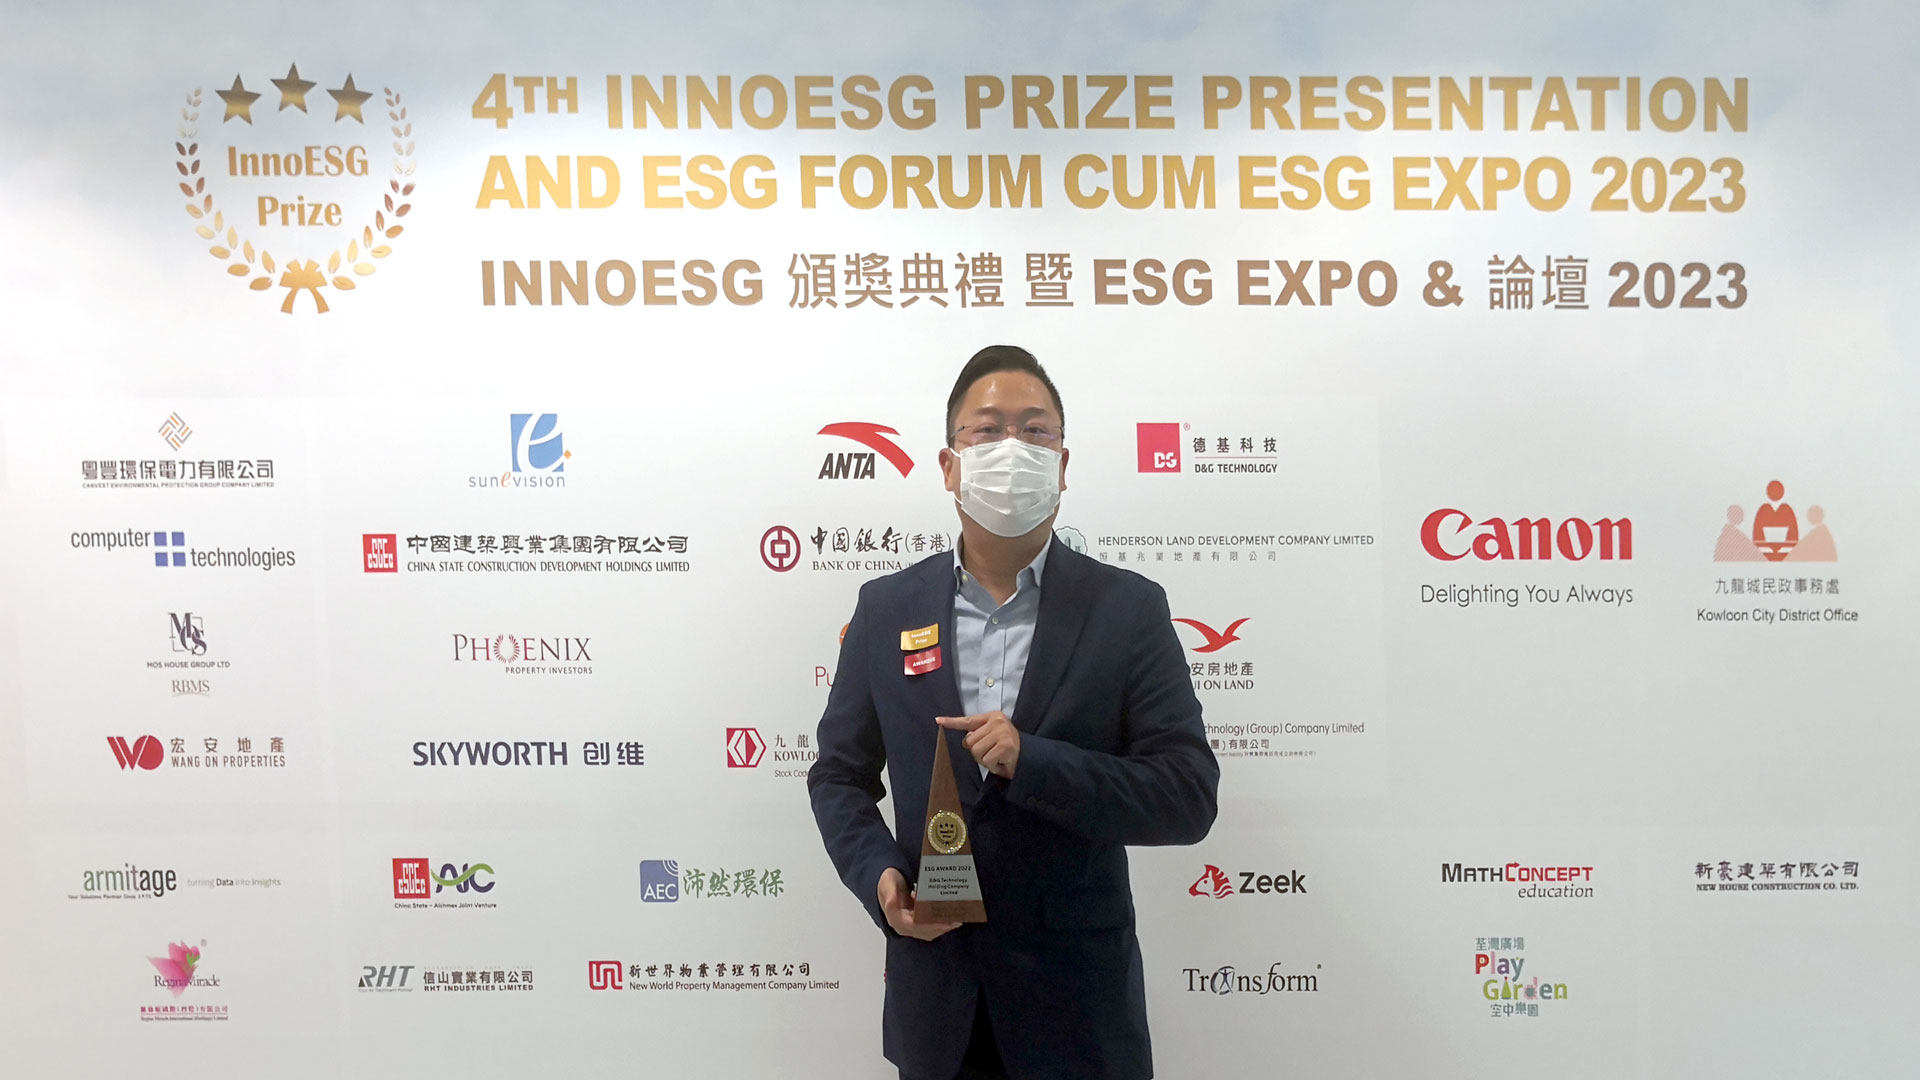 德基科技獲頒InnoESG  Prize 2022: ESG Award